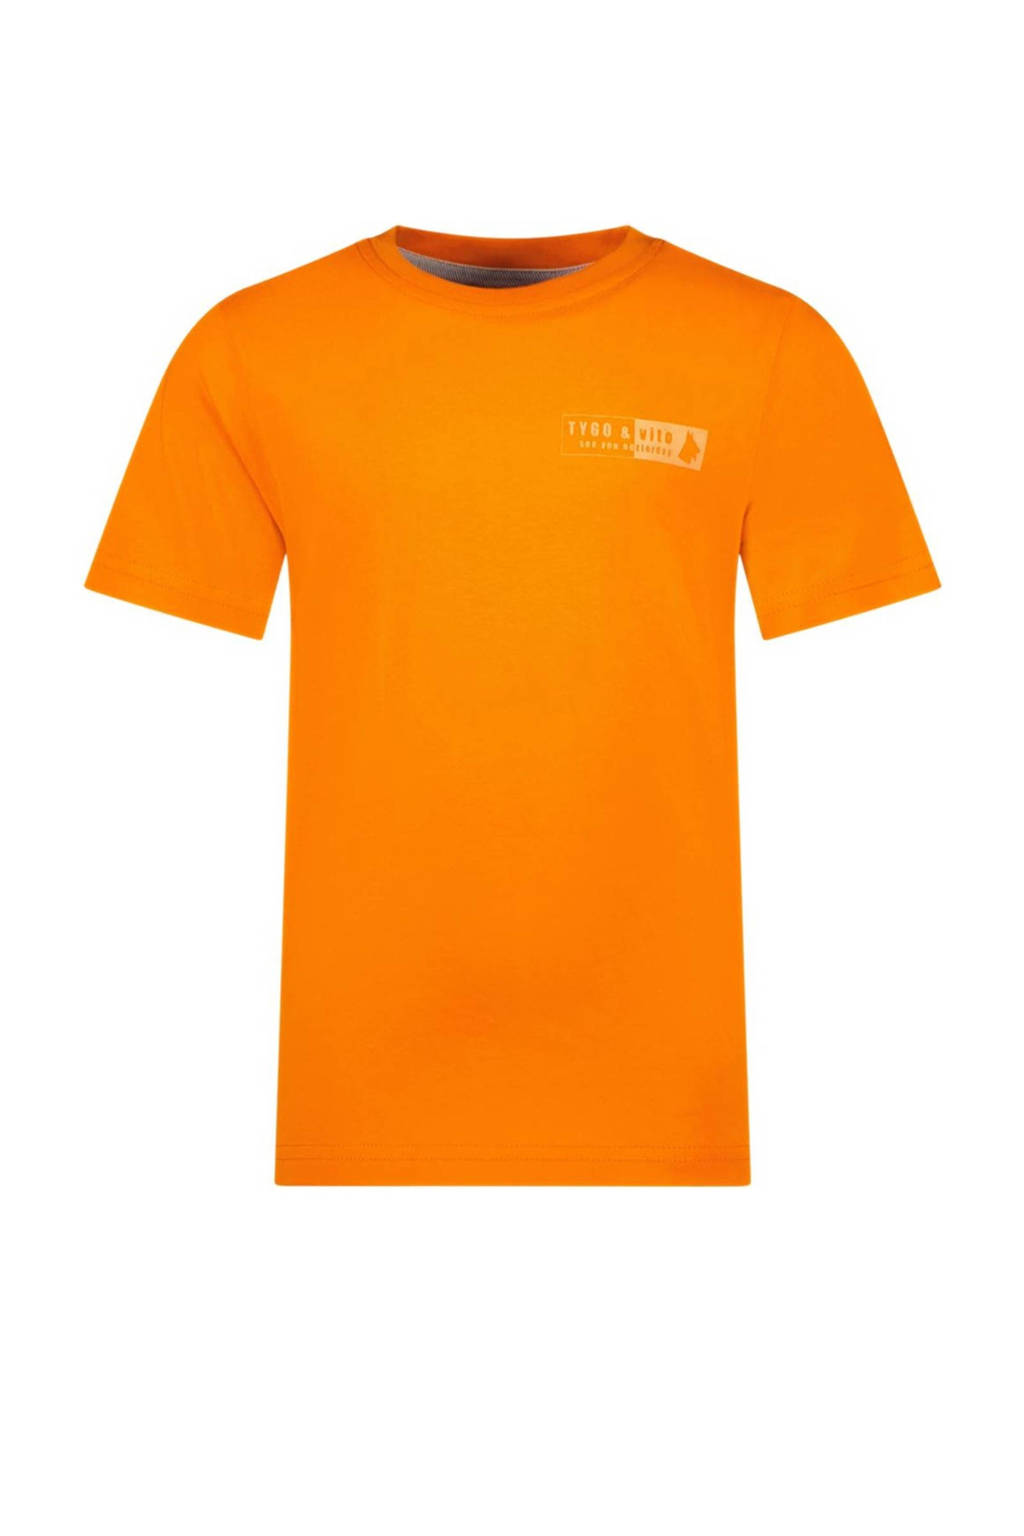 T-shirt Tijn met printopdruk oranje